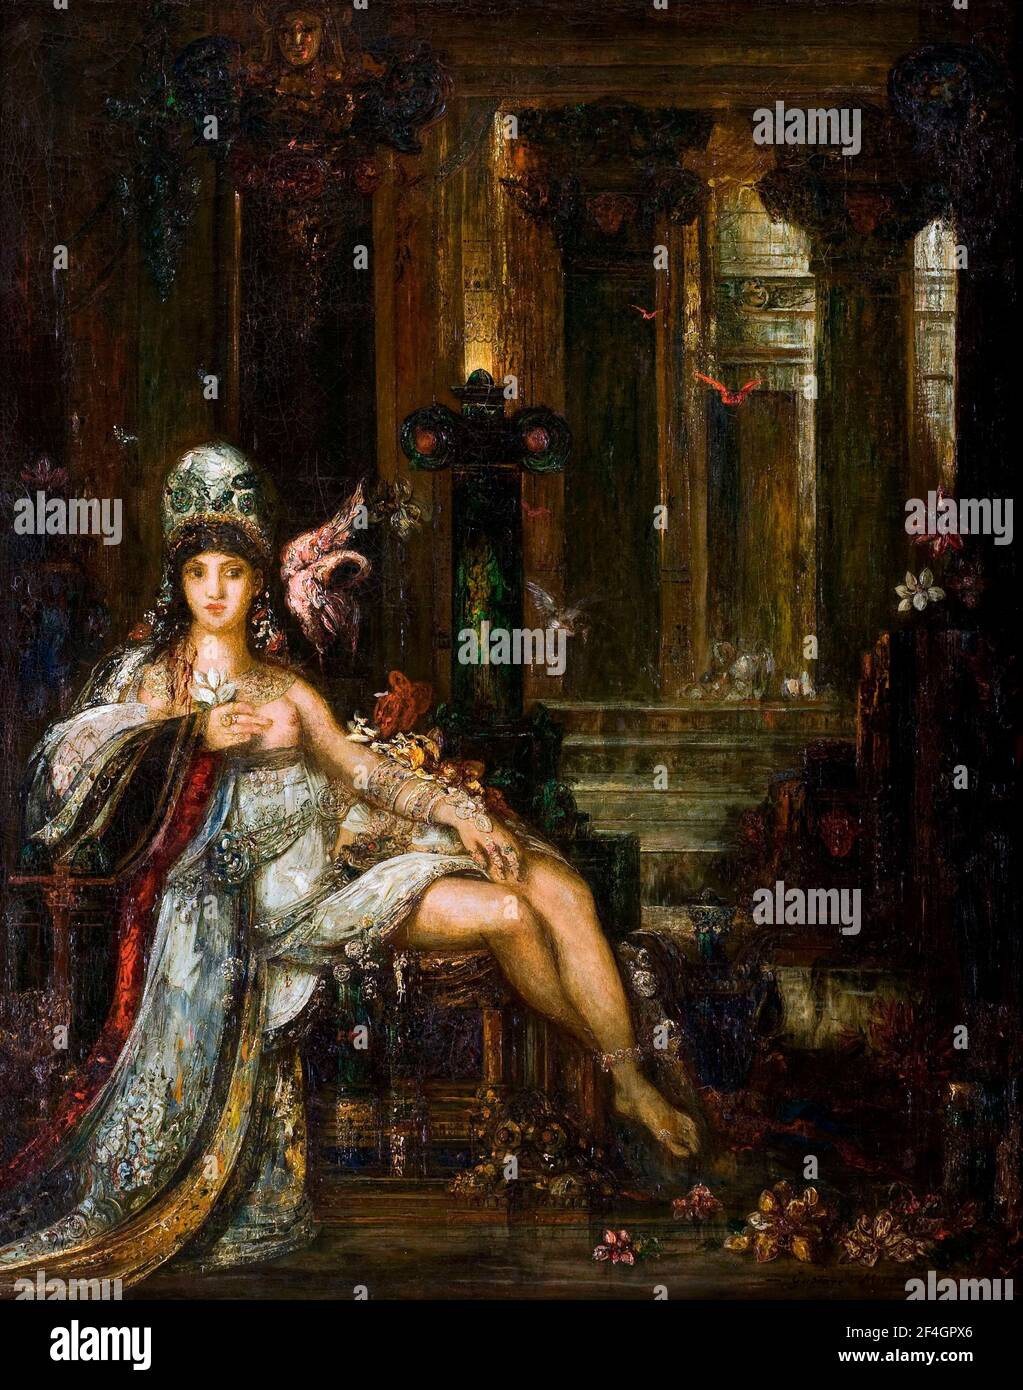 Gustave Moreau. Gemälde mit dem Titel "Delilah" von der französischen Symbolist Maler, Gustave Moreau (1826-1898), Öl auf Leinwand, c.. 1898 Stockfoto